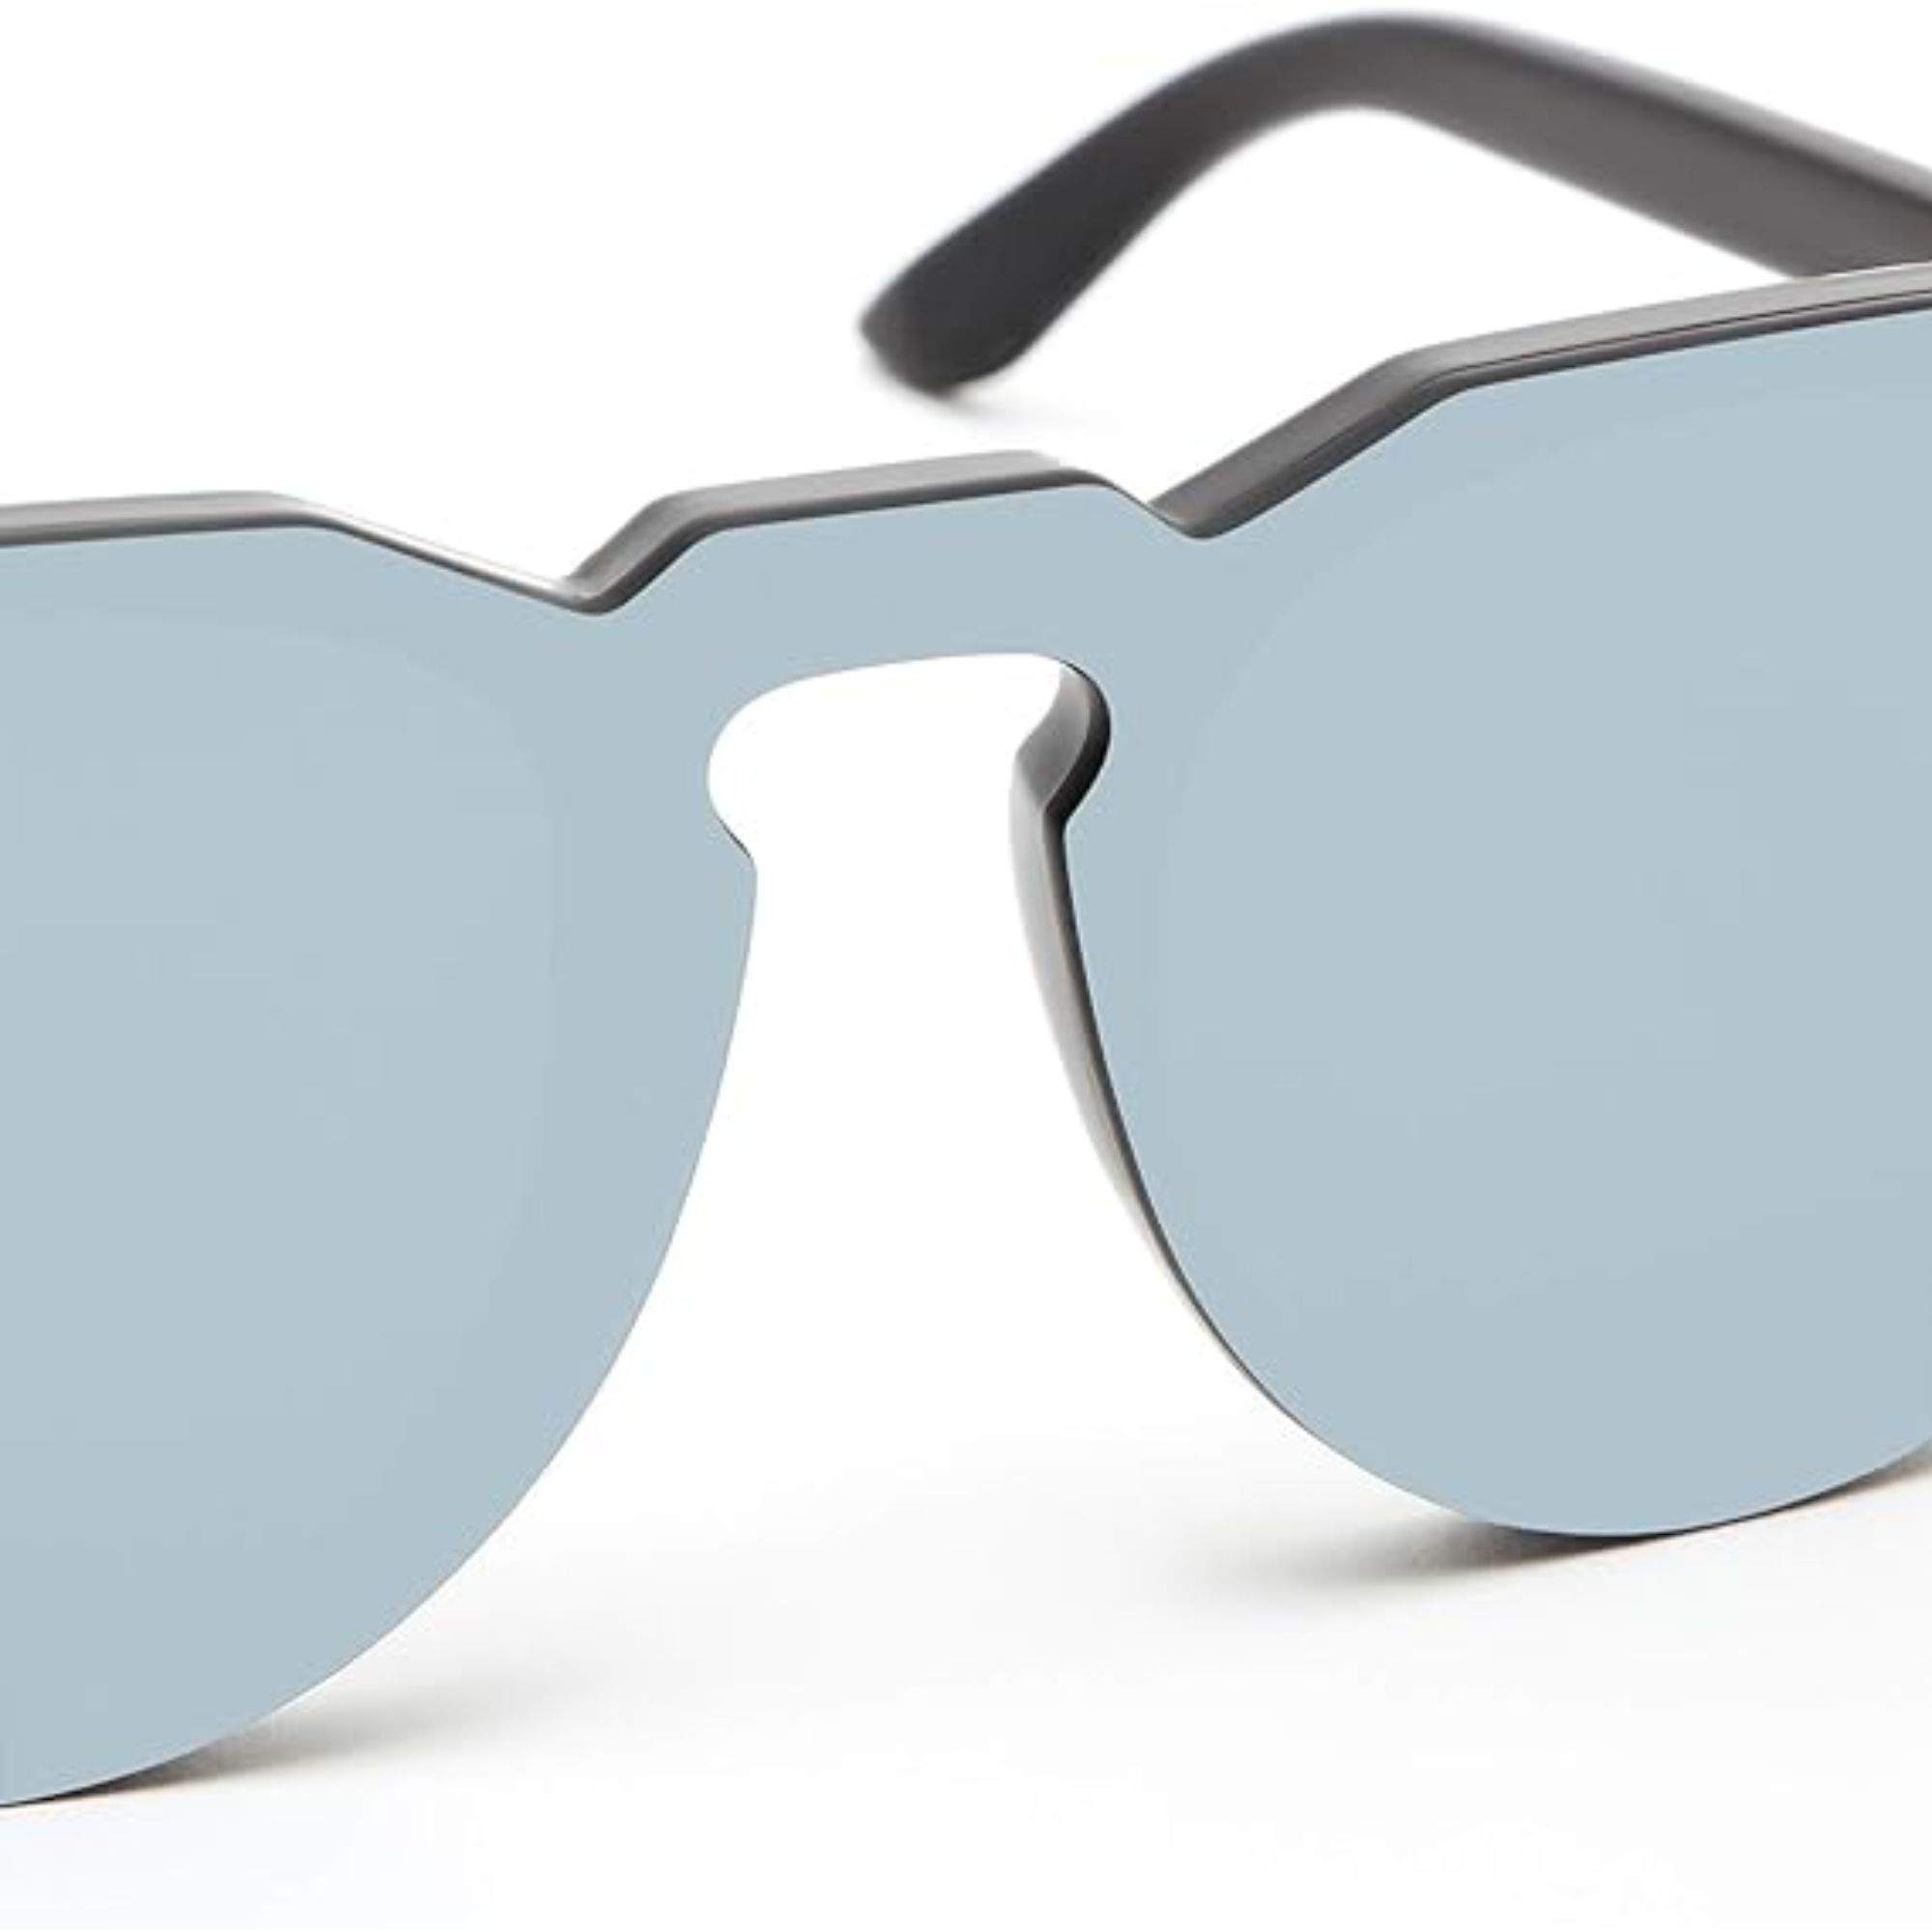 En Amazon puedes encontrar una gafas de sol Hawkers con un descuento del 62%